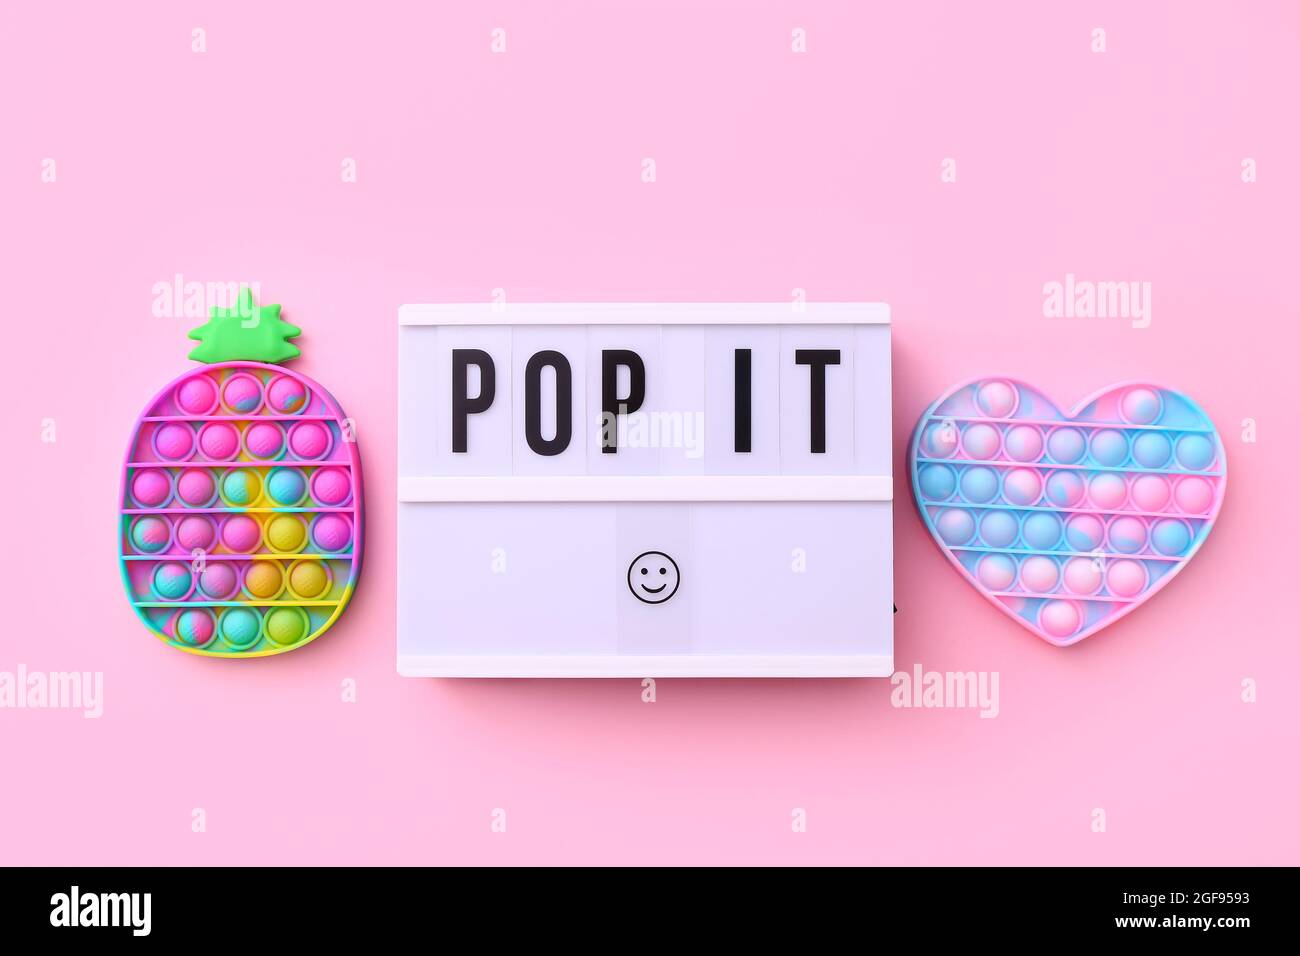 Trendy beliebtes Silikon bunte Anti Stress Pop IT Spielzeug für Kinder auf rosa Hintergrund mit Text Pop IT auf Leuchtkasten. Stockfoto